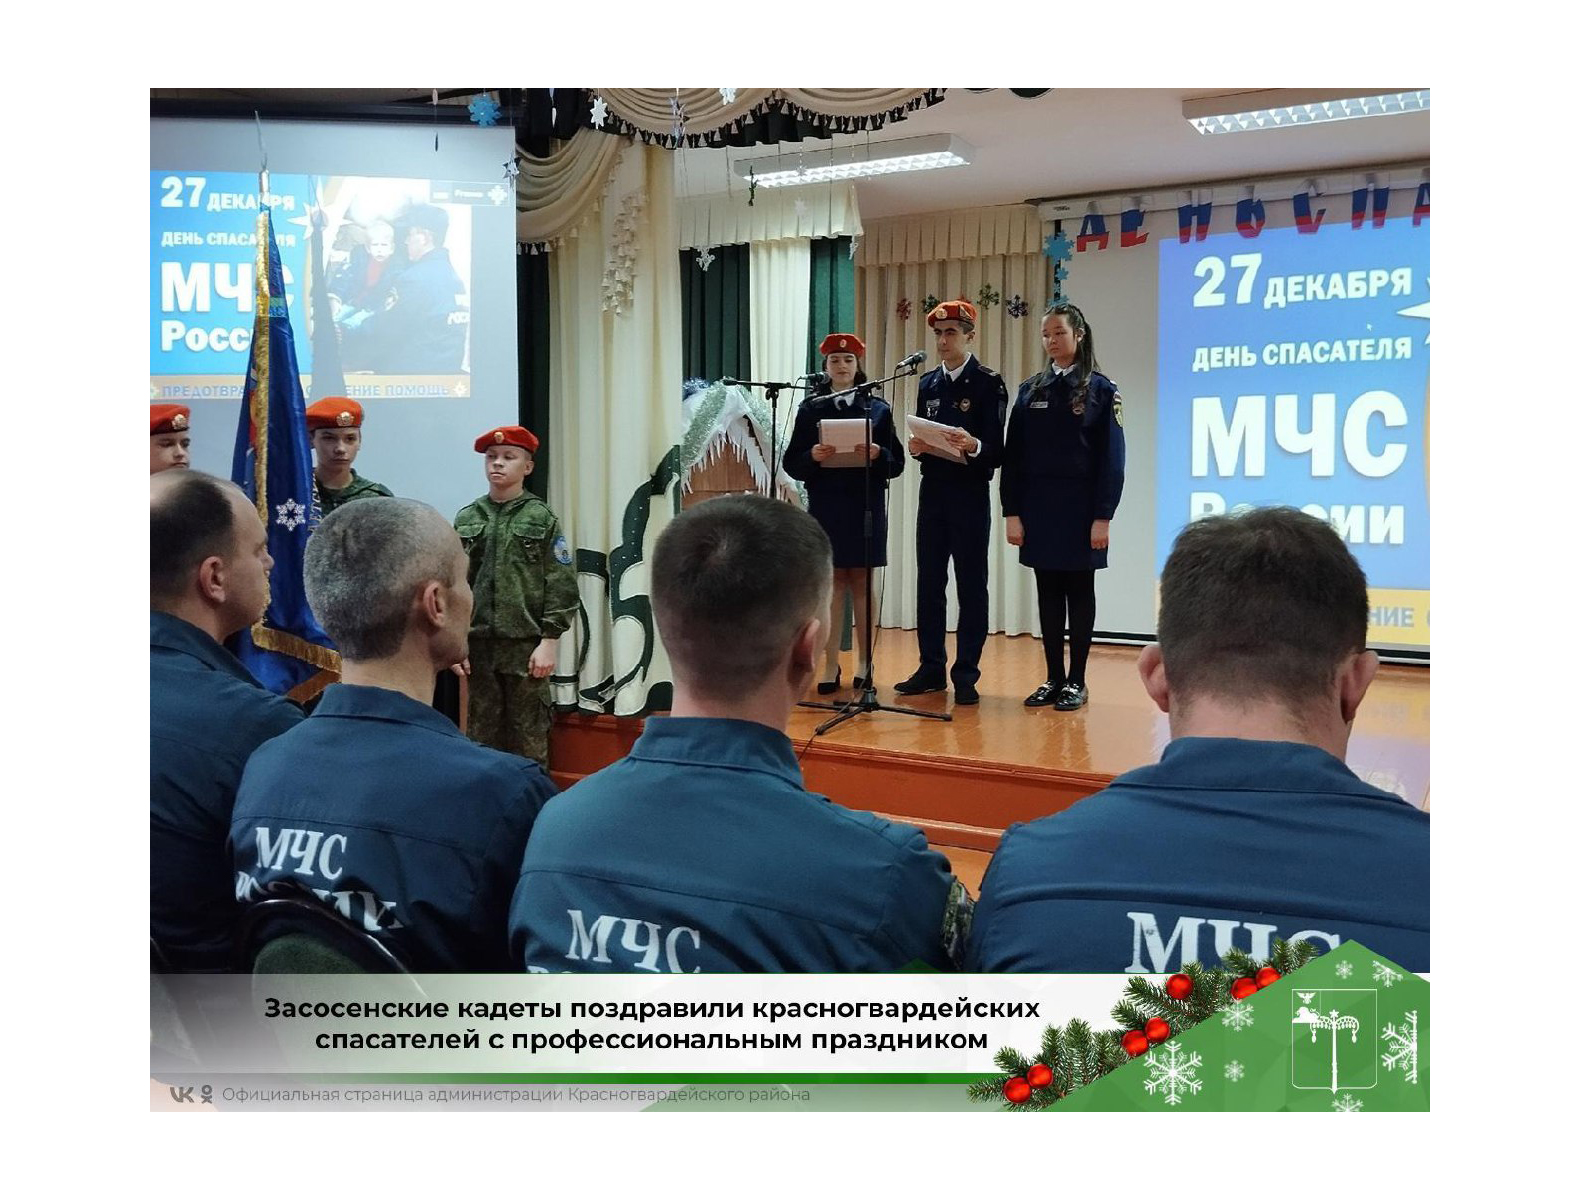 Засосенские кадеты поздравили красногвардейских спасателей с профессиональным праздником.